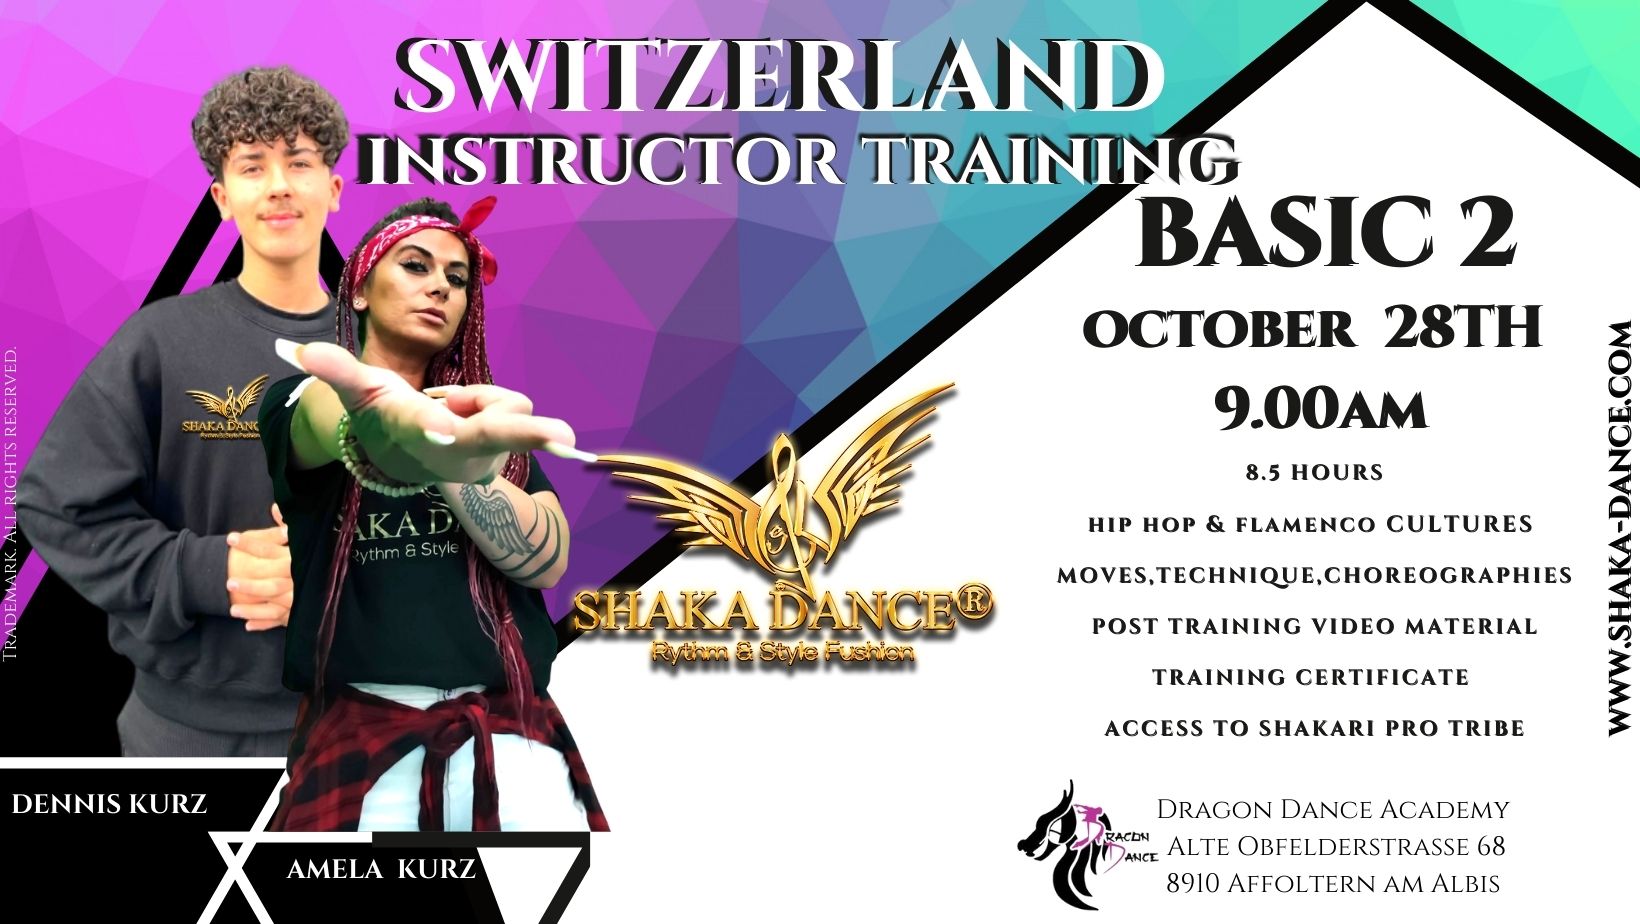 SHAKA DANCE® B2 Instructor Training Switzerland